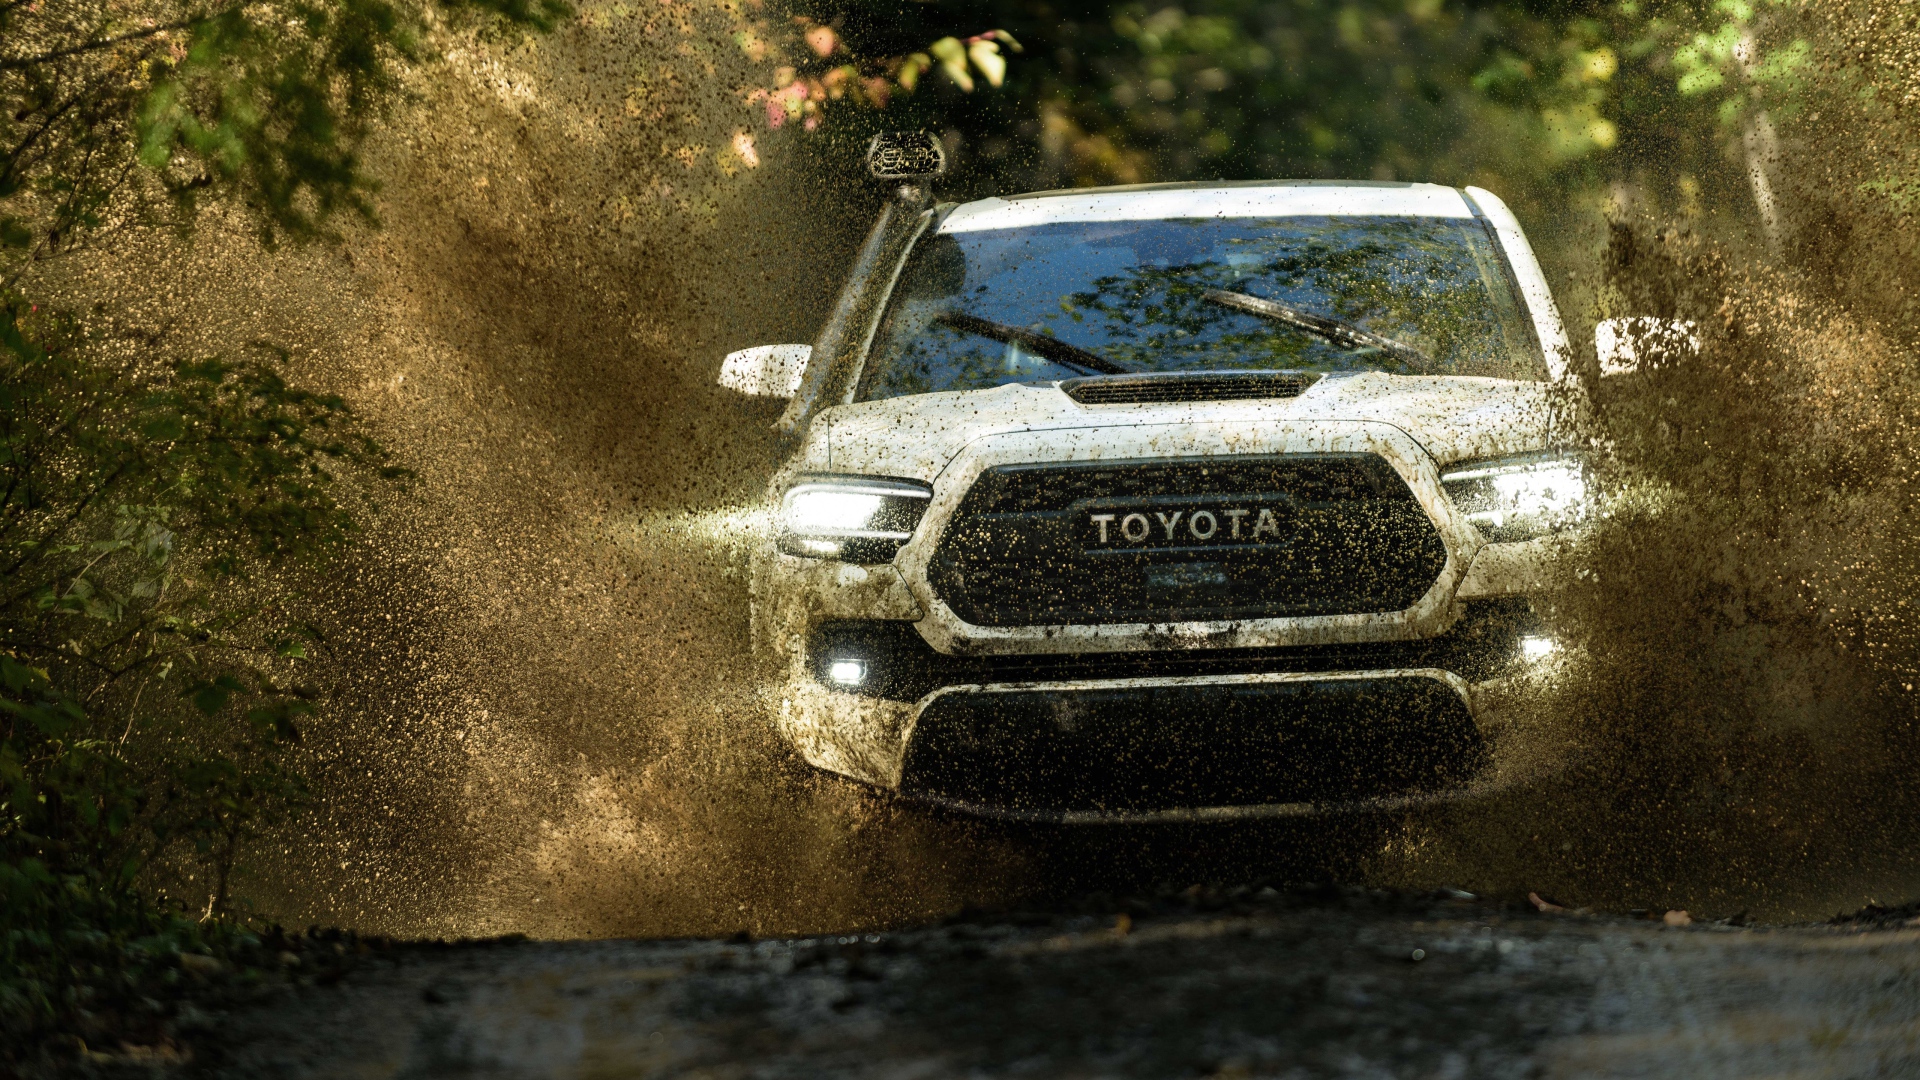 Внедорожник Toyota Tacoma, 2020 года едет по грязной воде